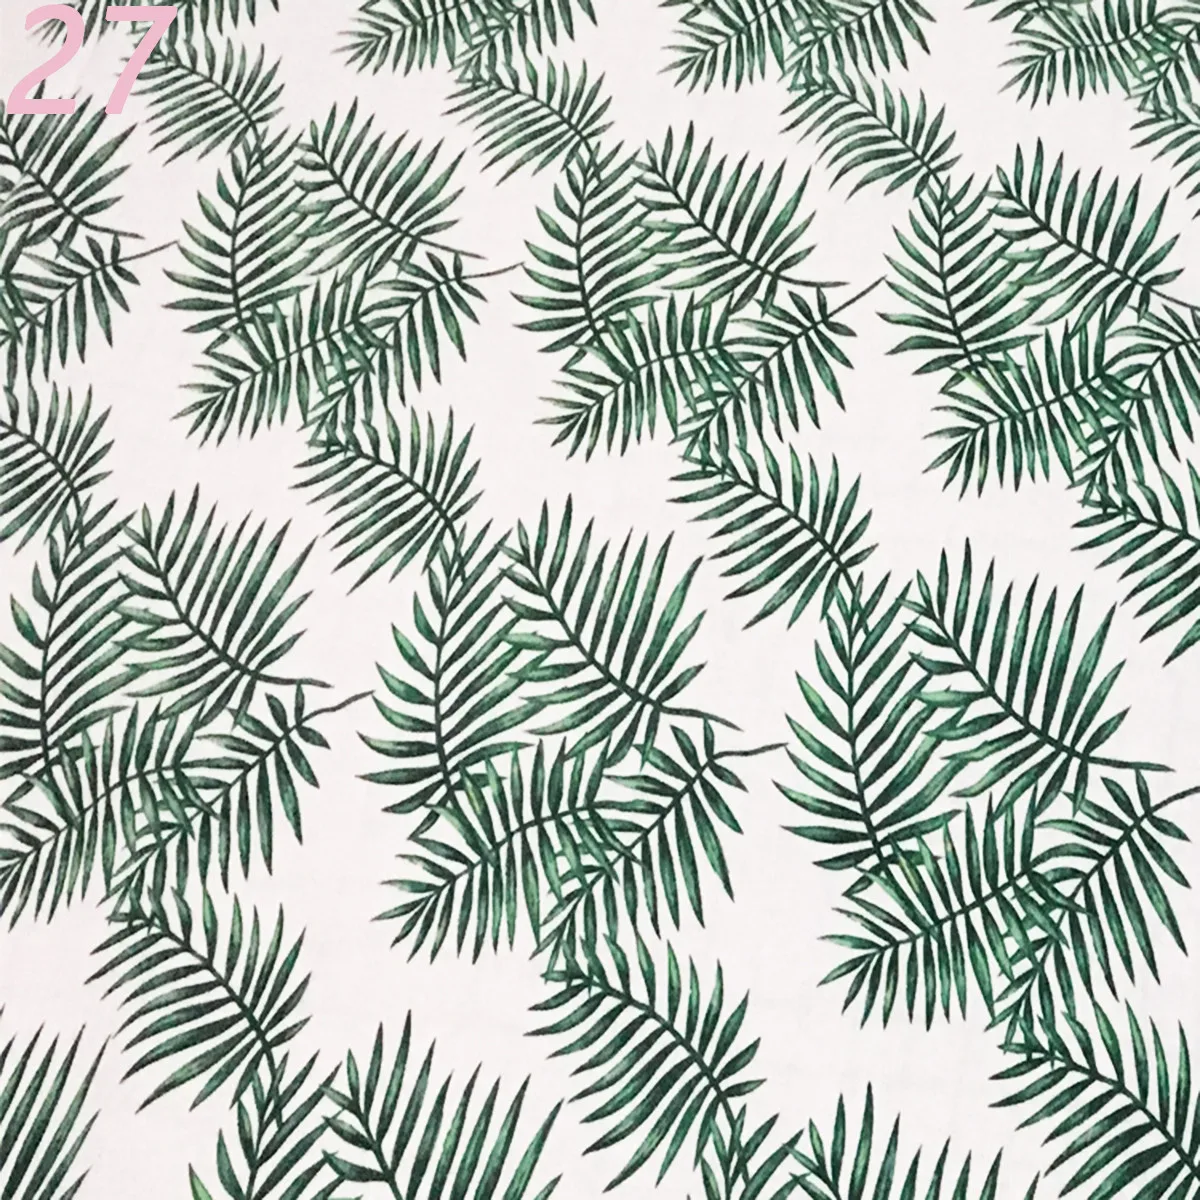 Хлопковые льняные клетчатые коврики на стол салфетки японский стиль ткань посуда домашний текстиль носовой платок из полиэстера - Цвет: 27